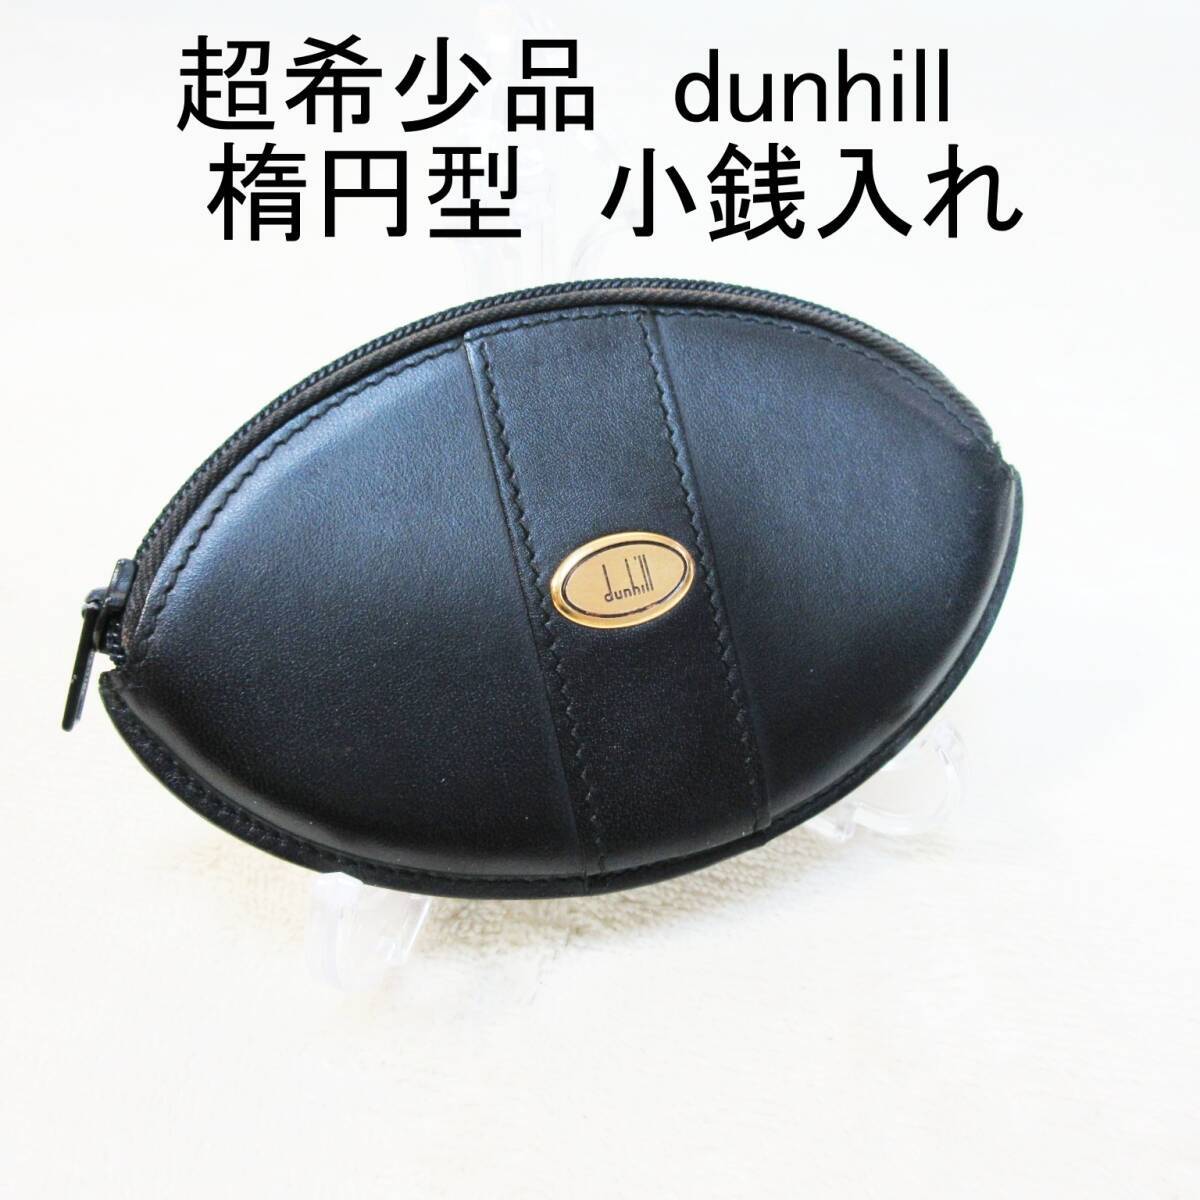 【超希少品】 dunhill ◆ ダンヒル ◆ 楕円型 ◆ ロゴ × 本革 レザー製 ◆ 小銭入れ コインケース ◆ 黒 ブラック系◆ 送料無料の画像1